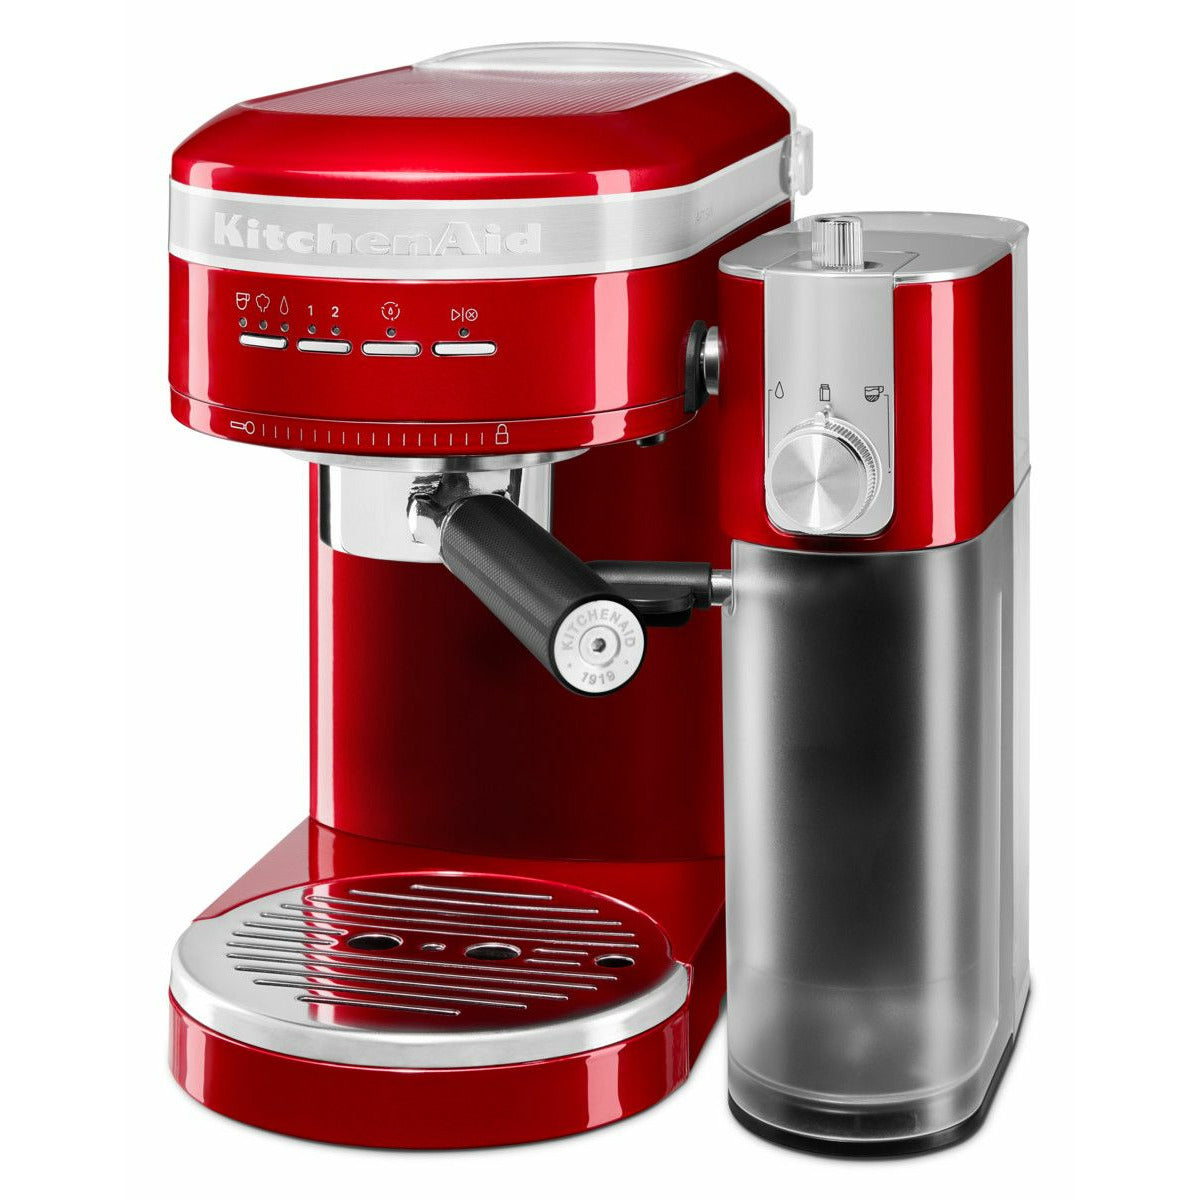 KitchenAid 5KES6503 Artisan Espressomaskine, Rød metallic